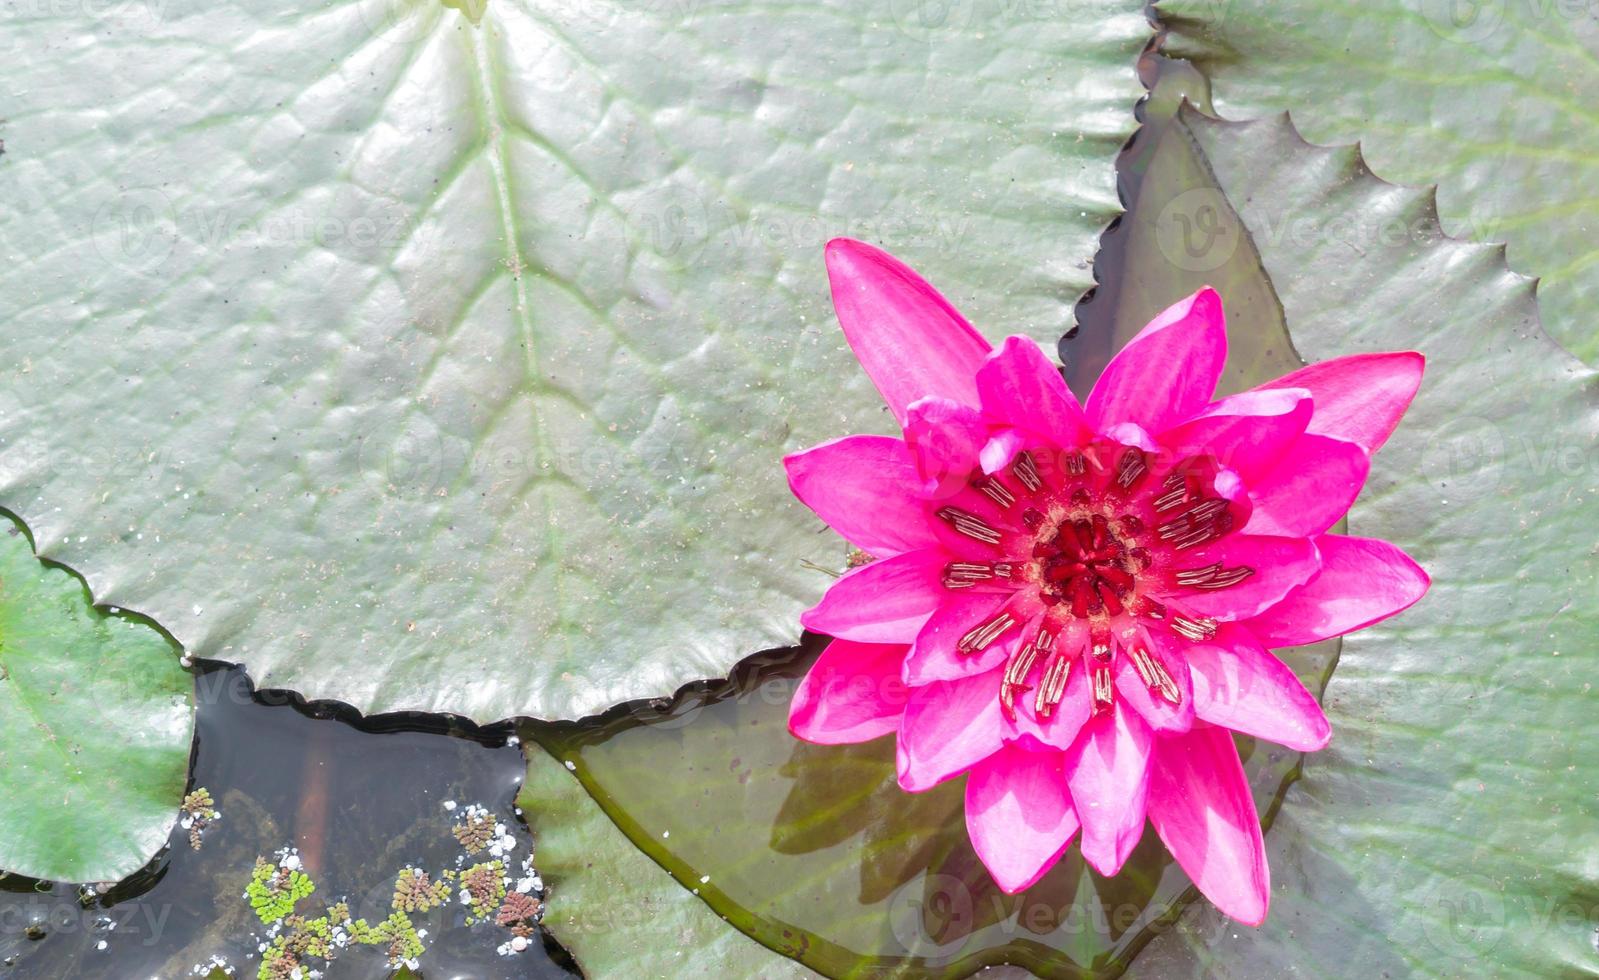 enda skön rosa vatten lilja eller lotus med grön löv tagen i vatten offentlig parkera i thailand, buddha blomma foto